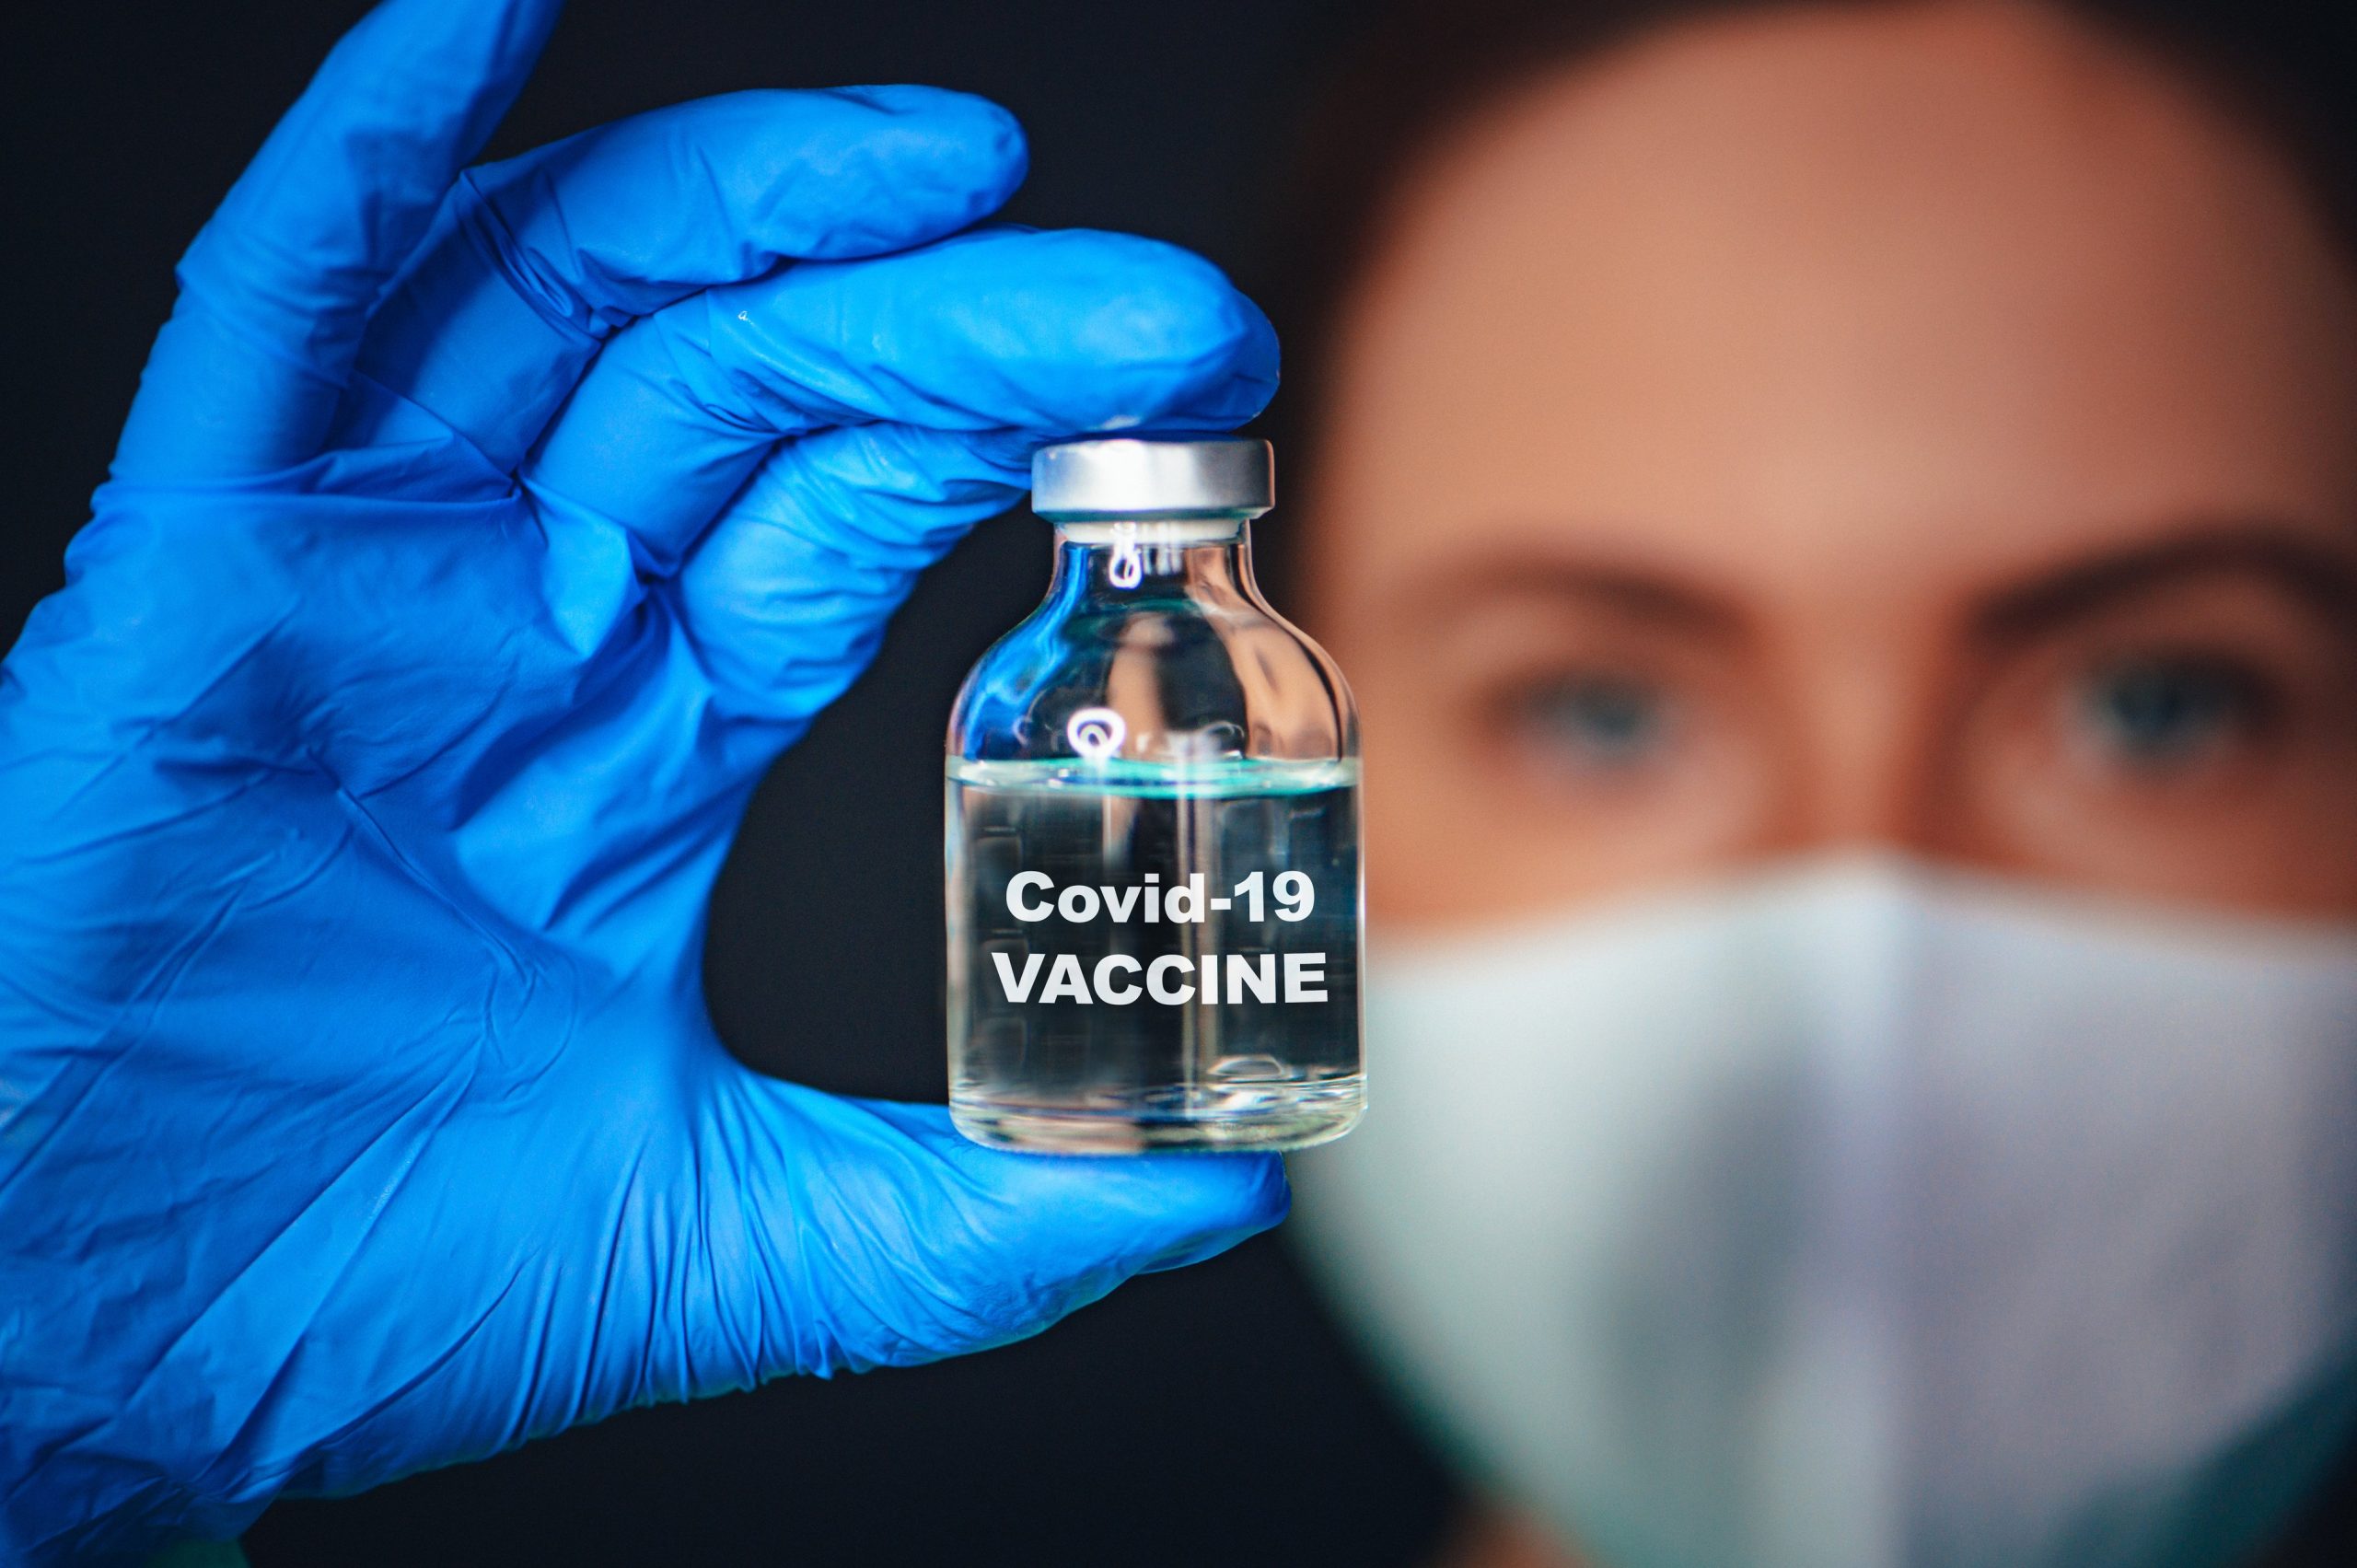 Β.Κοντοζαμάνης: «Τα εμβόλια του κορωνοϊού θα αντιμετωπιστούν ως ένα και δεν θα κάνουμε επιλογή»